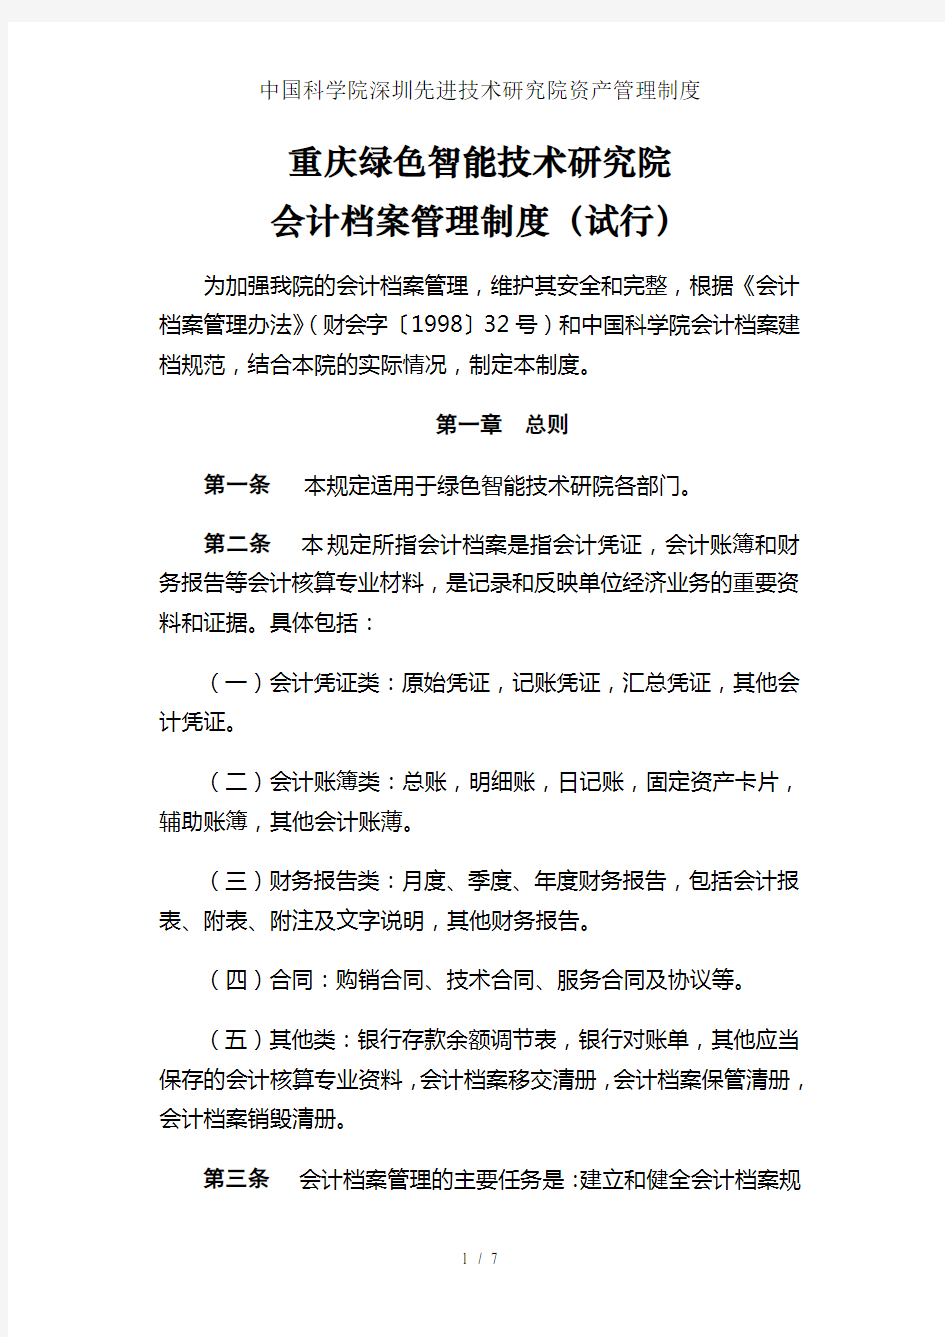 中国科学院深圳先进技术研究院资产管理制度